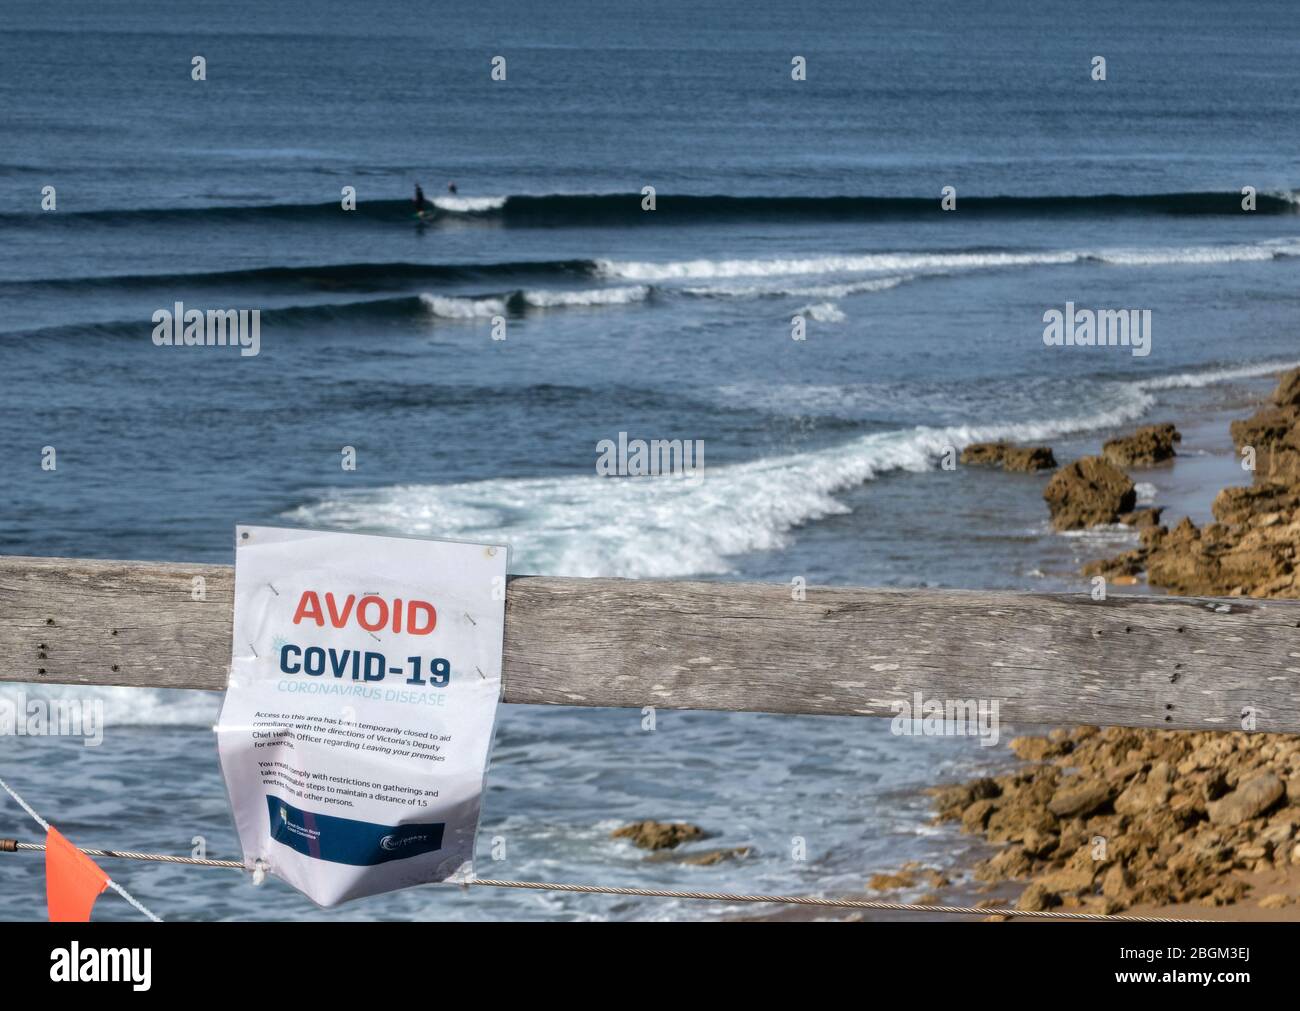 Covid-19, Coronavirus, Pandema Melbourne, Australie 2020.Plage fermée et panneaux d'avertissement Covid-19 sur les plages de surf près de Melbourne. Banque D'Images